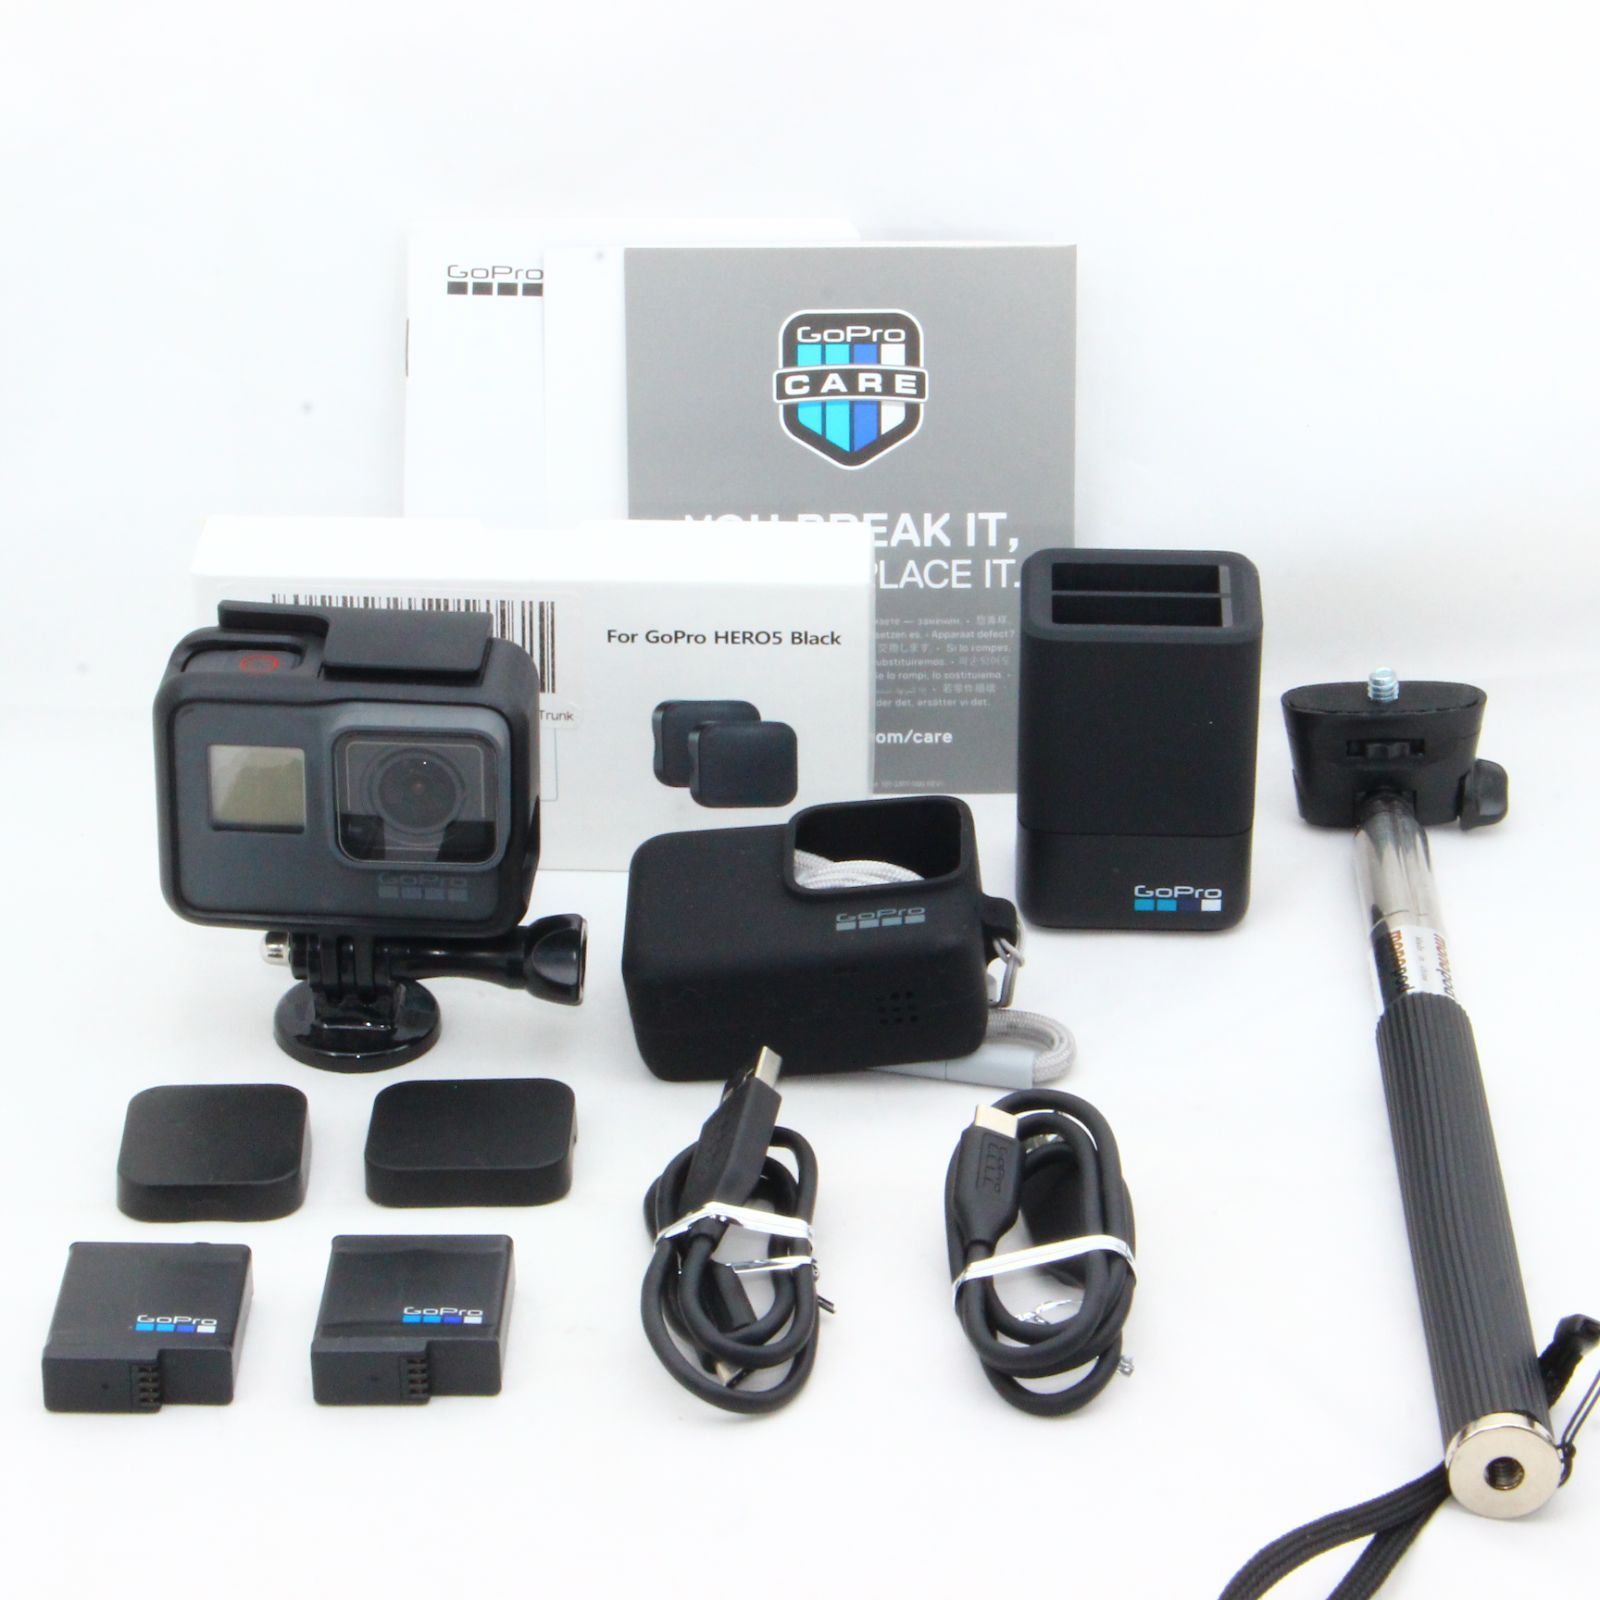 特別セール品 GoPro ウェアラブルカメラ HERO5 Black CHDHX-502 リール